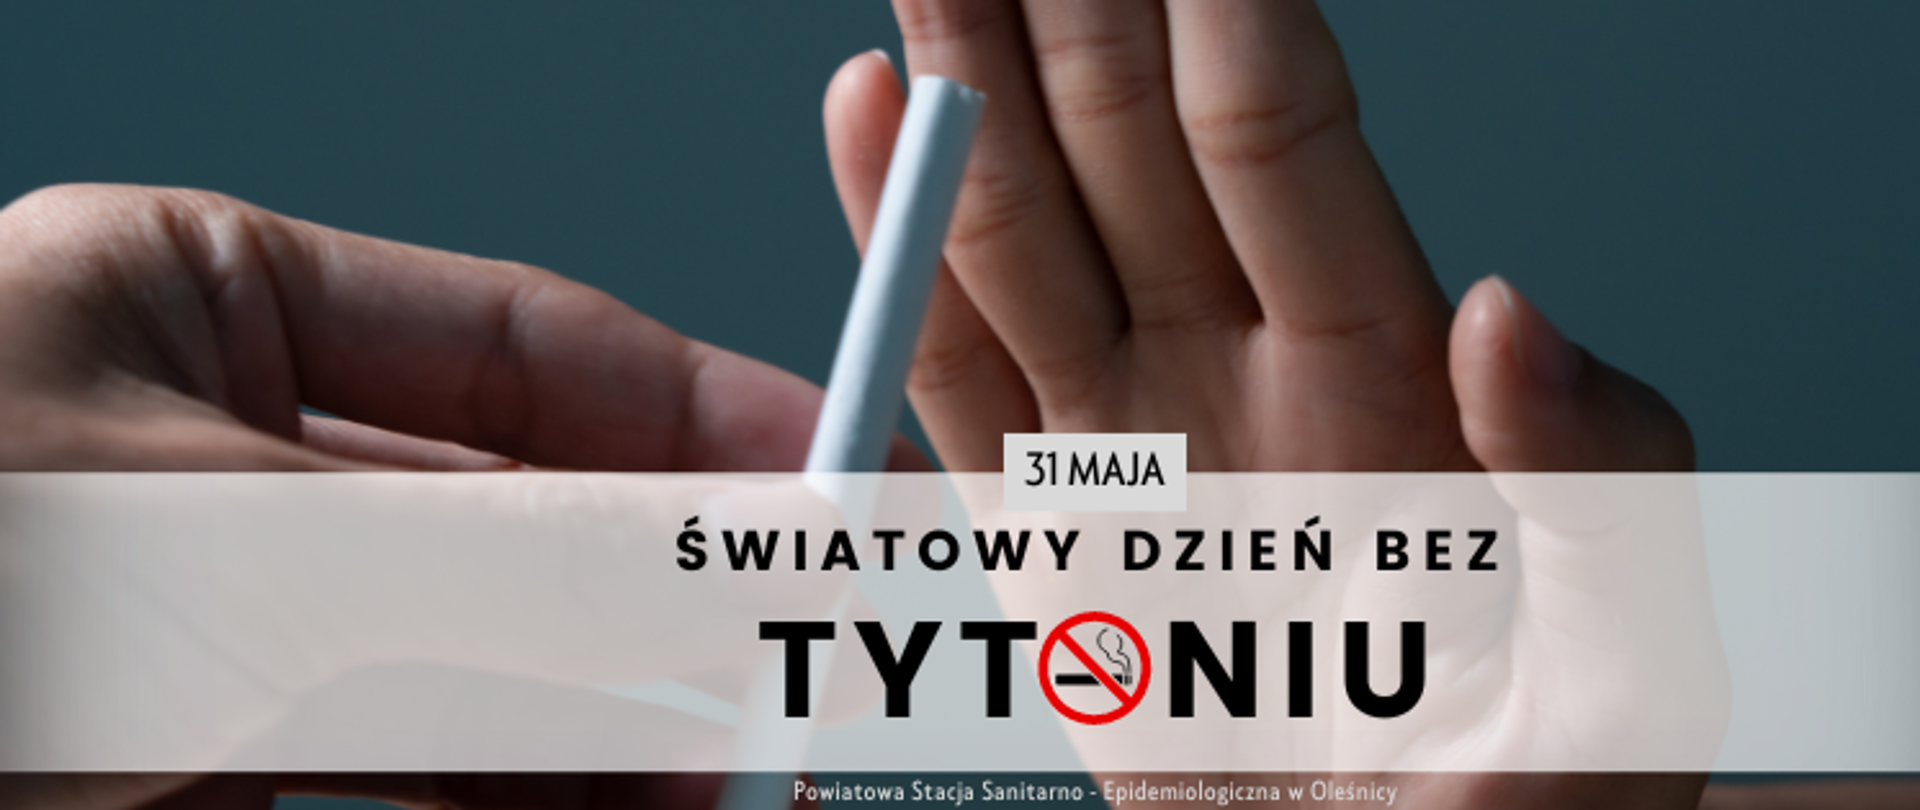 Światowy Dzień bez Tytoniu